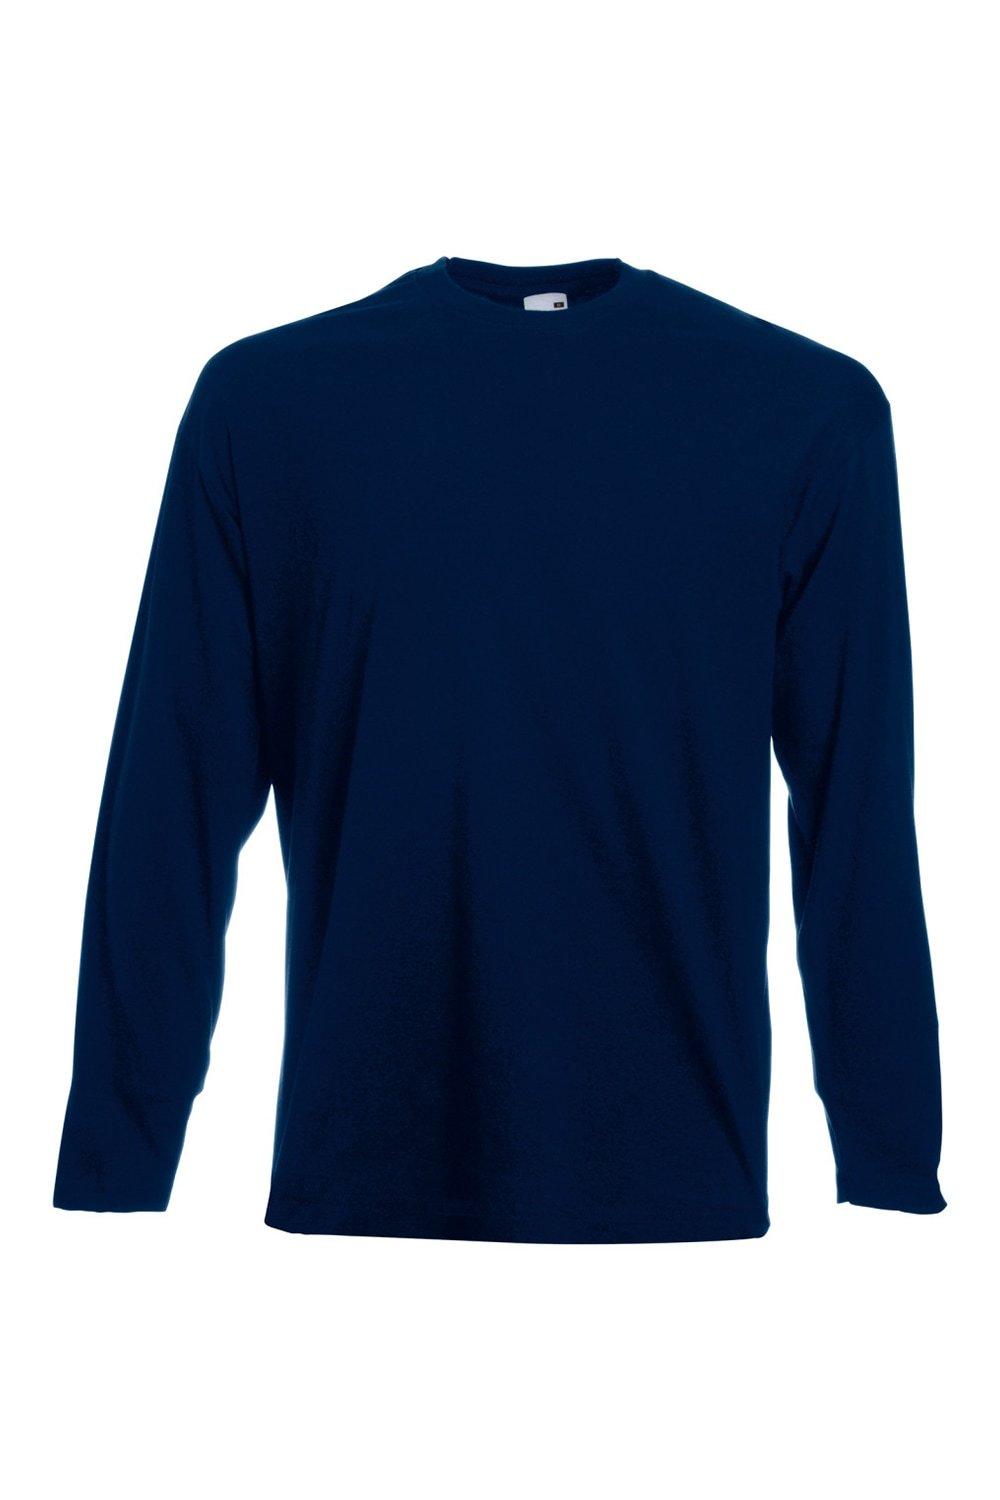 Повседневная футболка Value с длинным рукавом Universal Textiles, синий повседневная футболка с коротким рукавом universal textiles синий